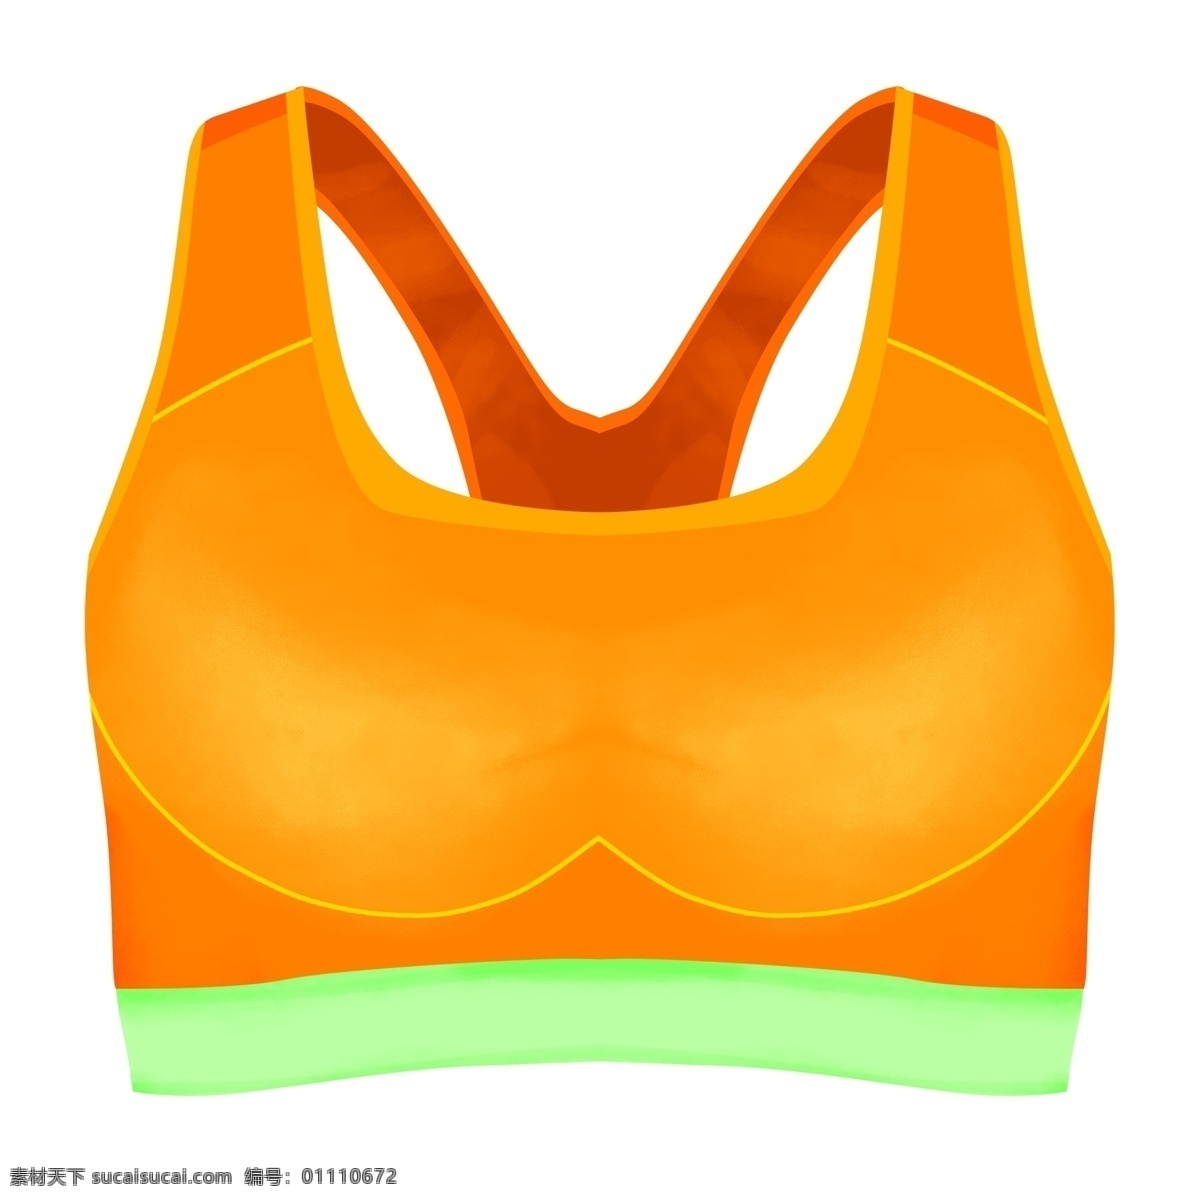 全民健身 日 健身 元素 女性内衣 装备 免 抠 健身内衣 内衣 橙色 健身装备